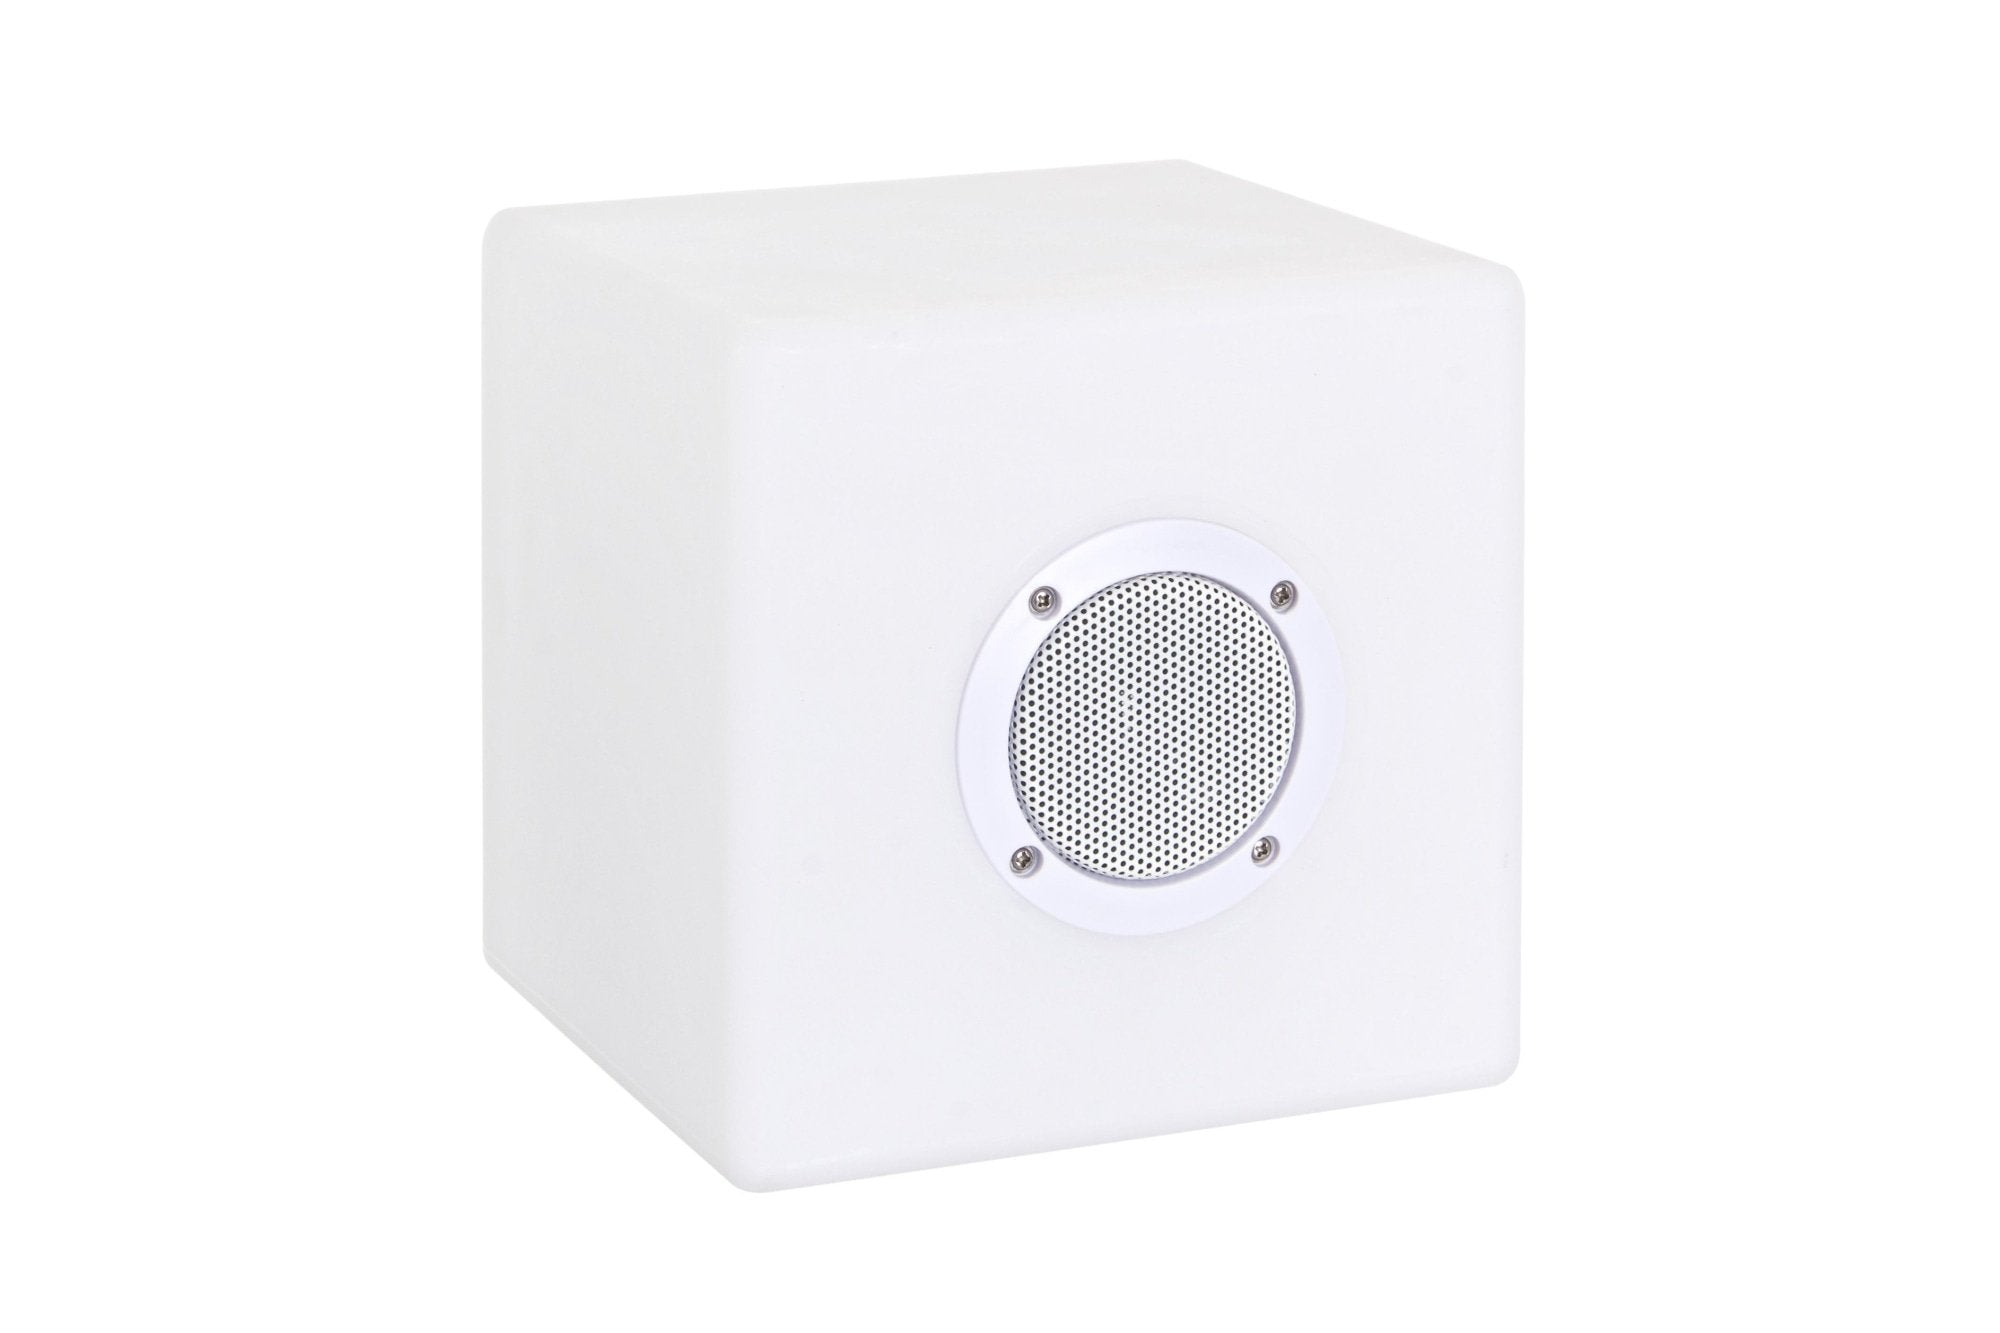 LED lámpa Bluetooth hangszóróval, Bizzotto Cube, 7 színben, USB kábel + távirányító, 20x20x20 cm, 20x20x20 cm